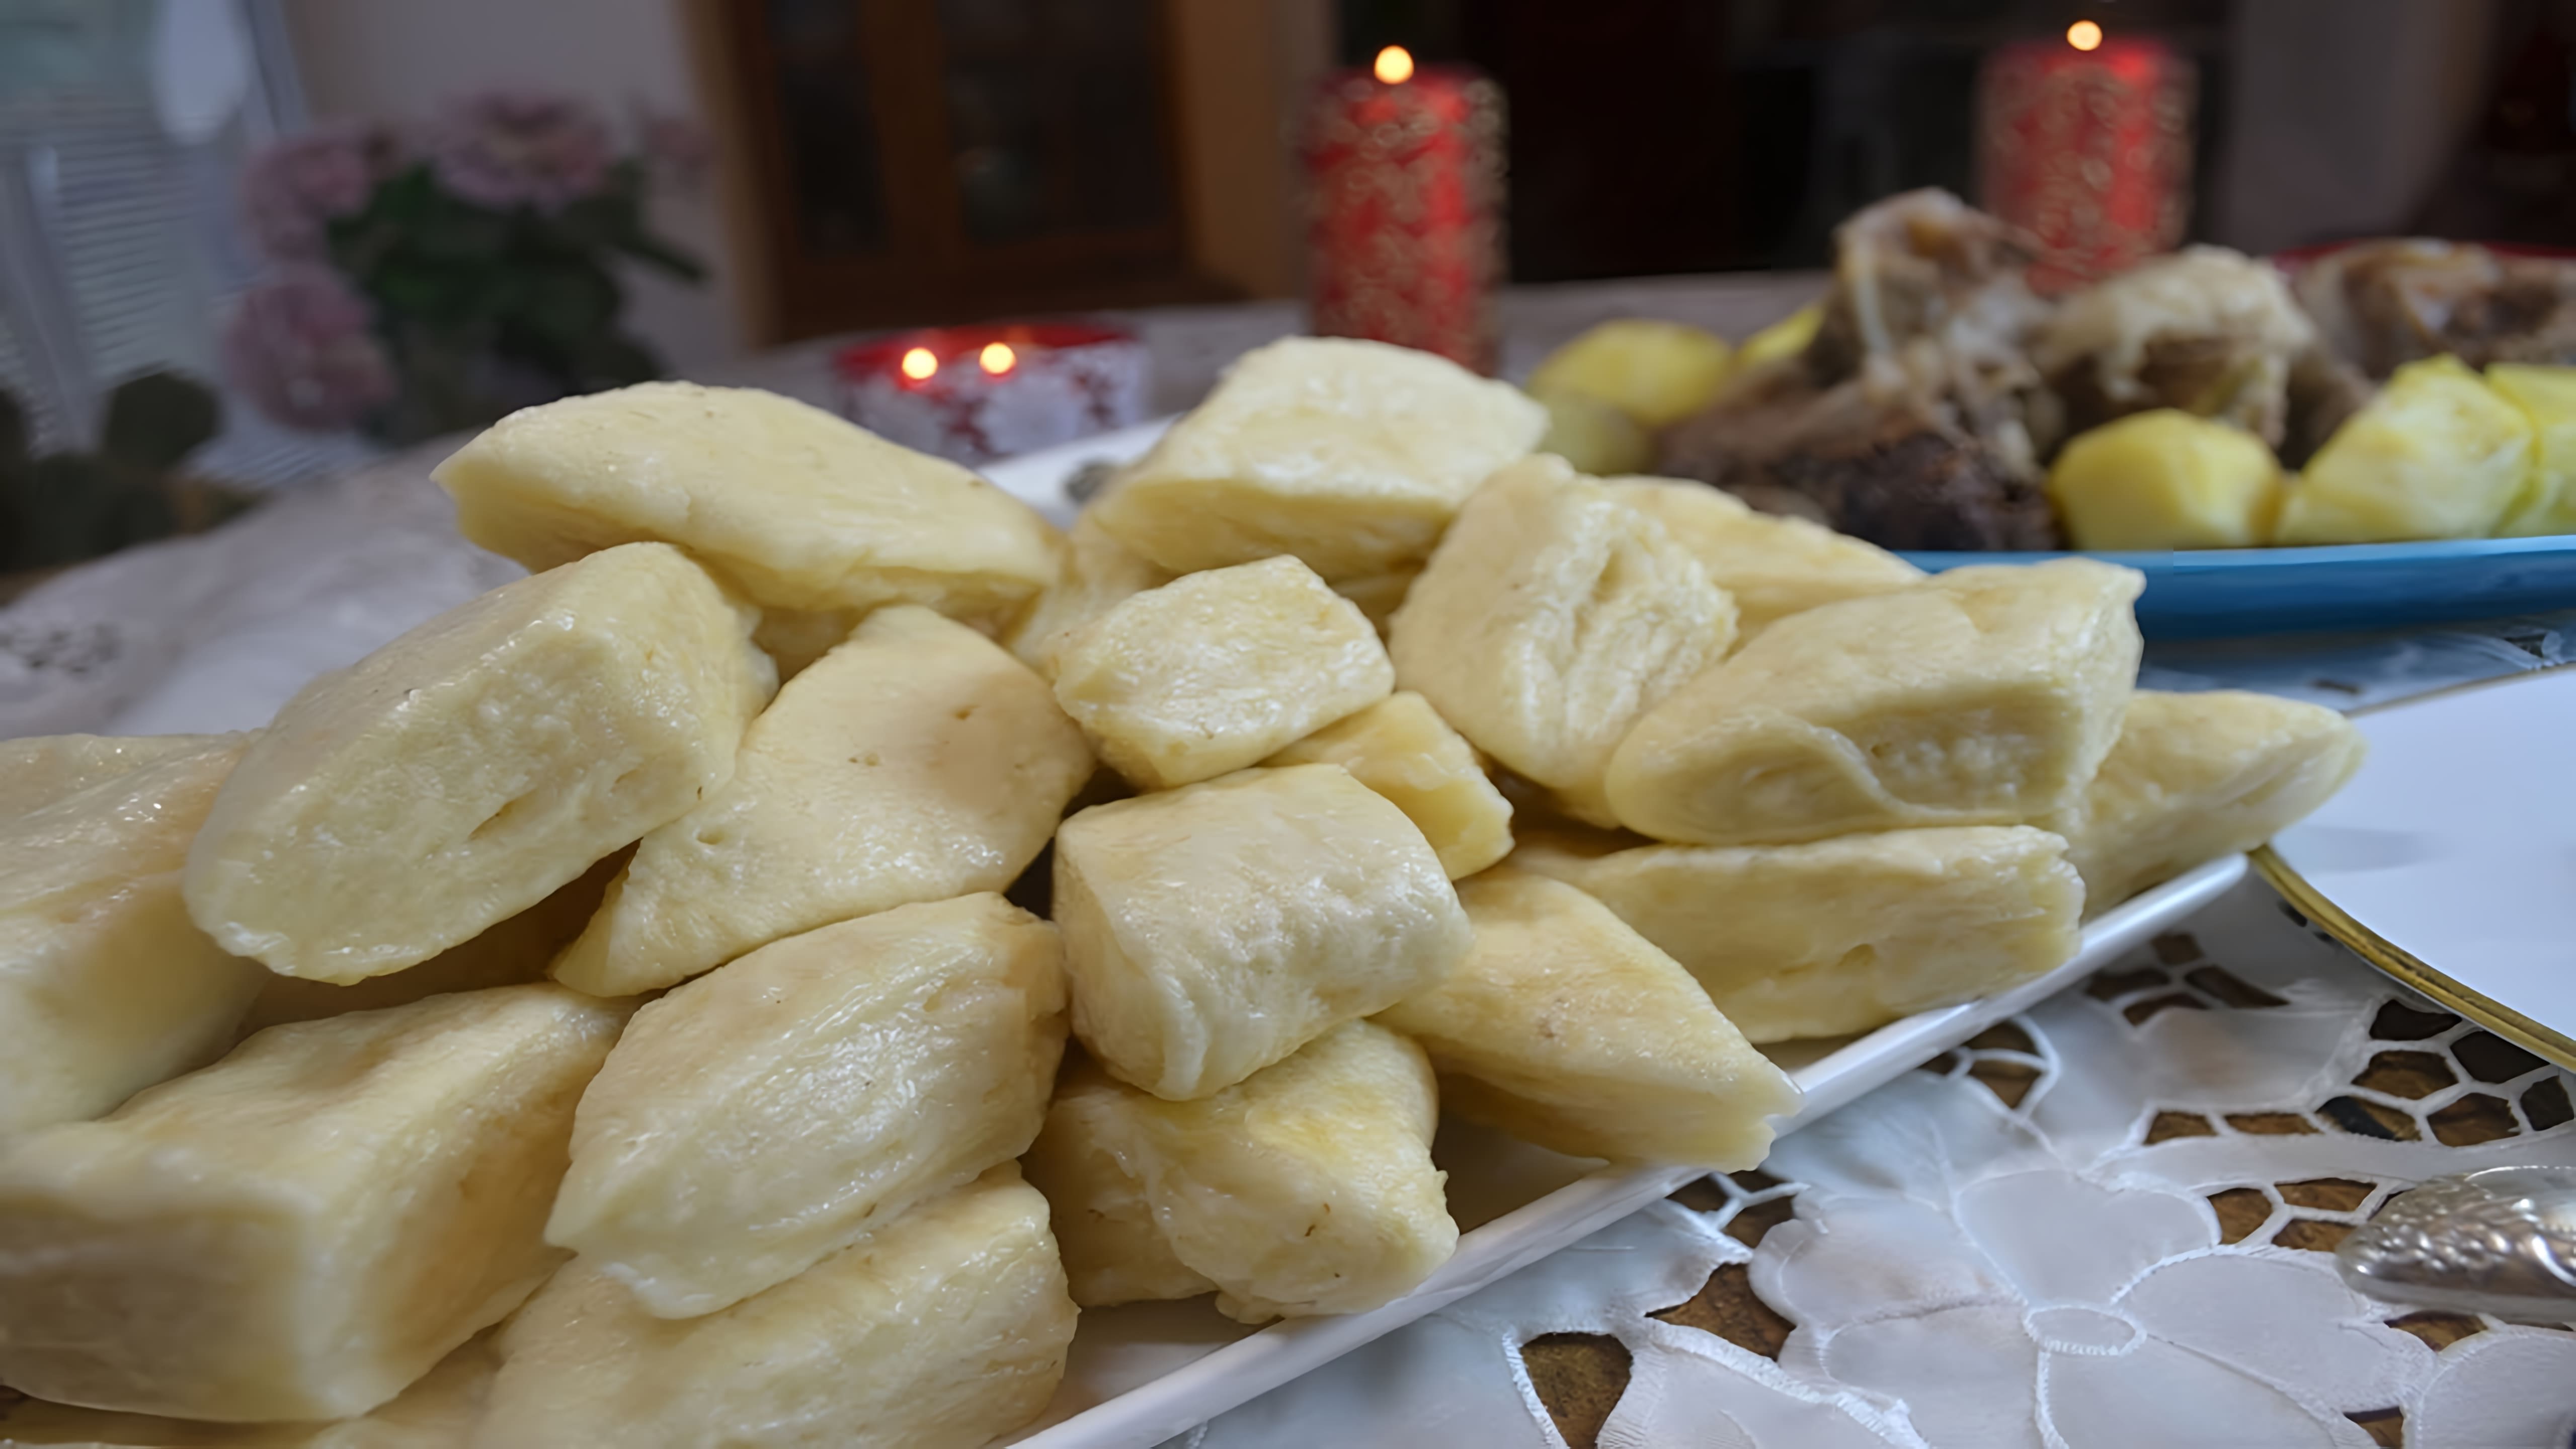 В этом видео демонстрируется процесс приготовления аварского хинкала, традиционного блюда дагестанской кухни